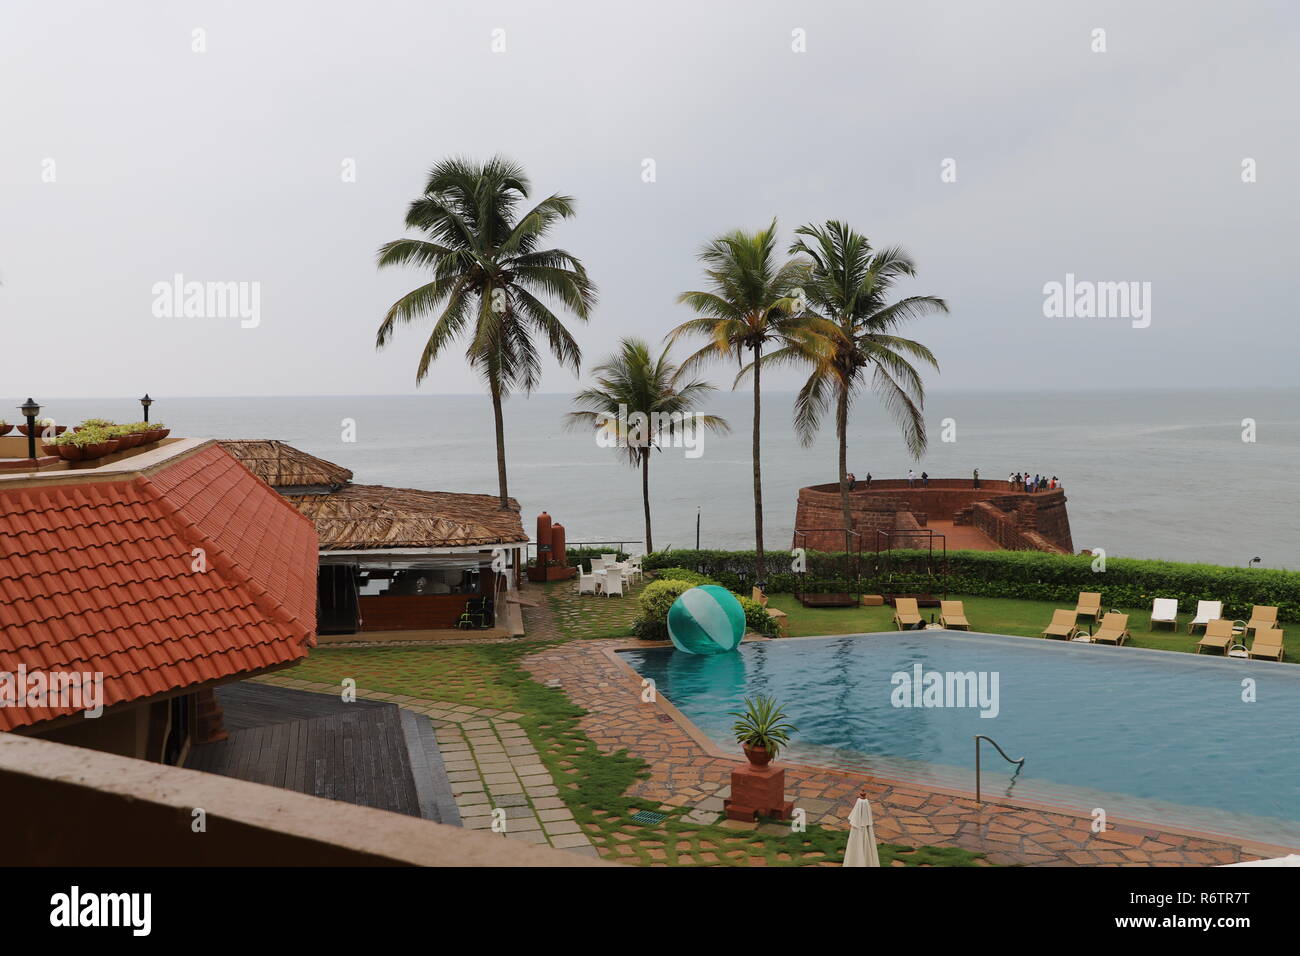 Vue apaisante d'un fort resort dans le Nord de Goa composé d'une piscine extérieure, d'abris, de villégiature exotique cocotiers et la mer sans fin Banque D'Images